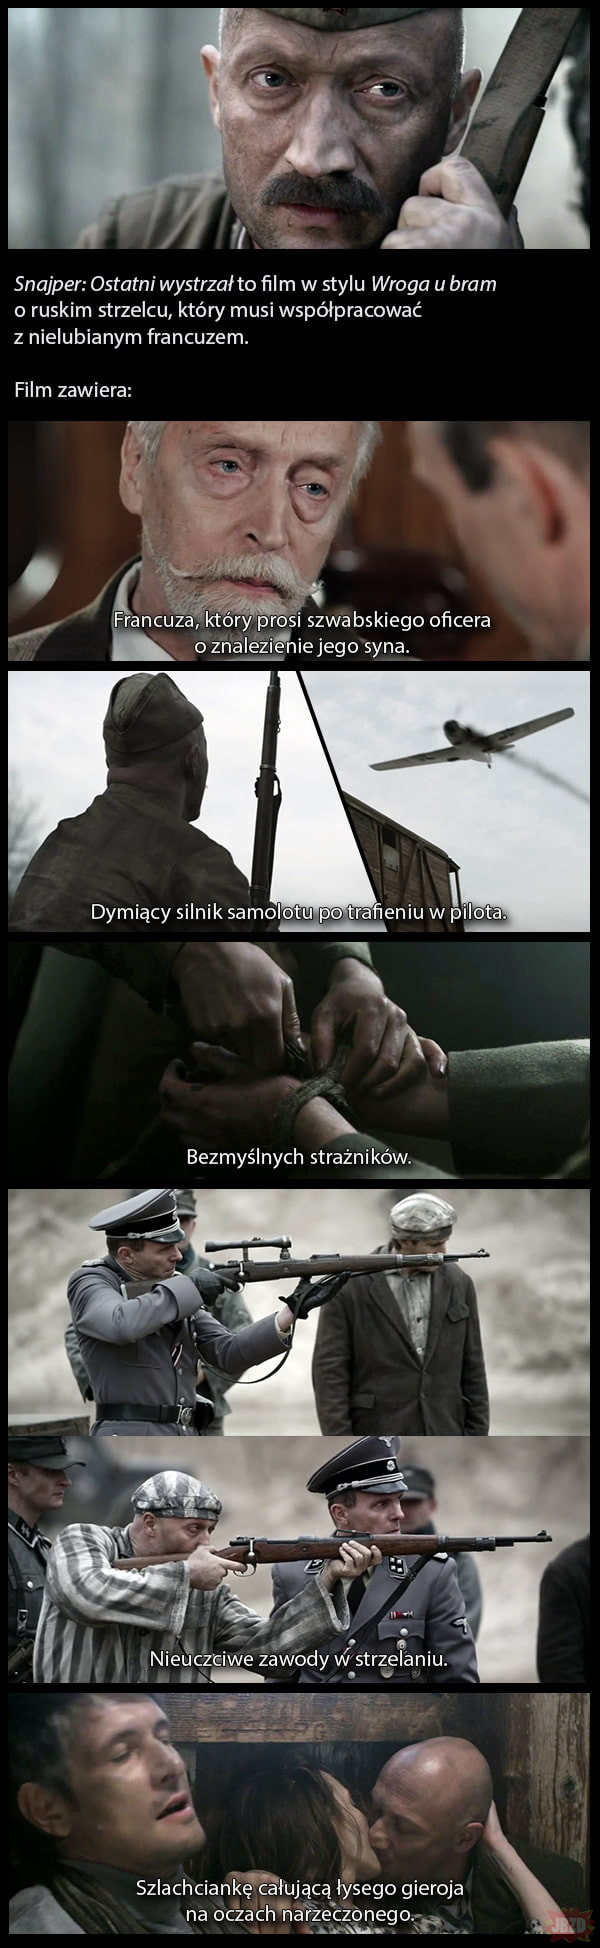 Śmieszne filmy odc. 11 - Снайпер: Последний выстрел (2015).